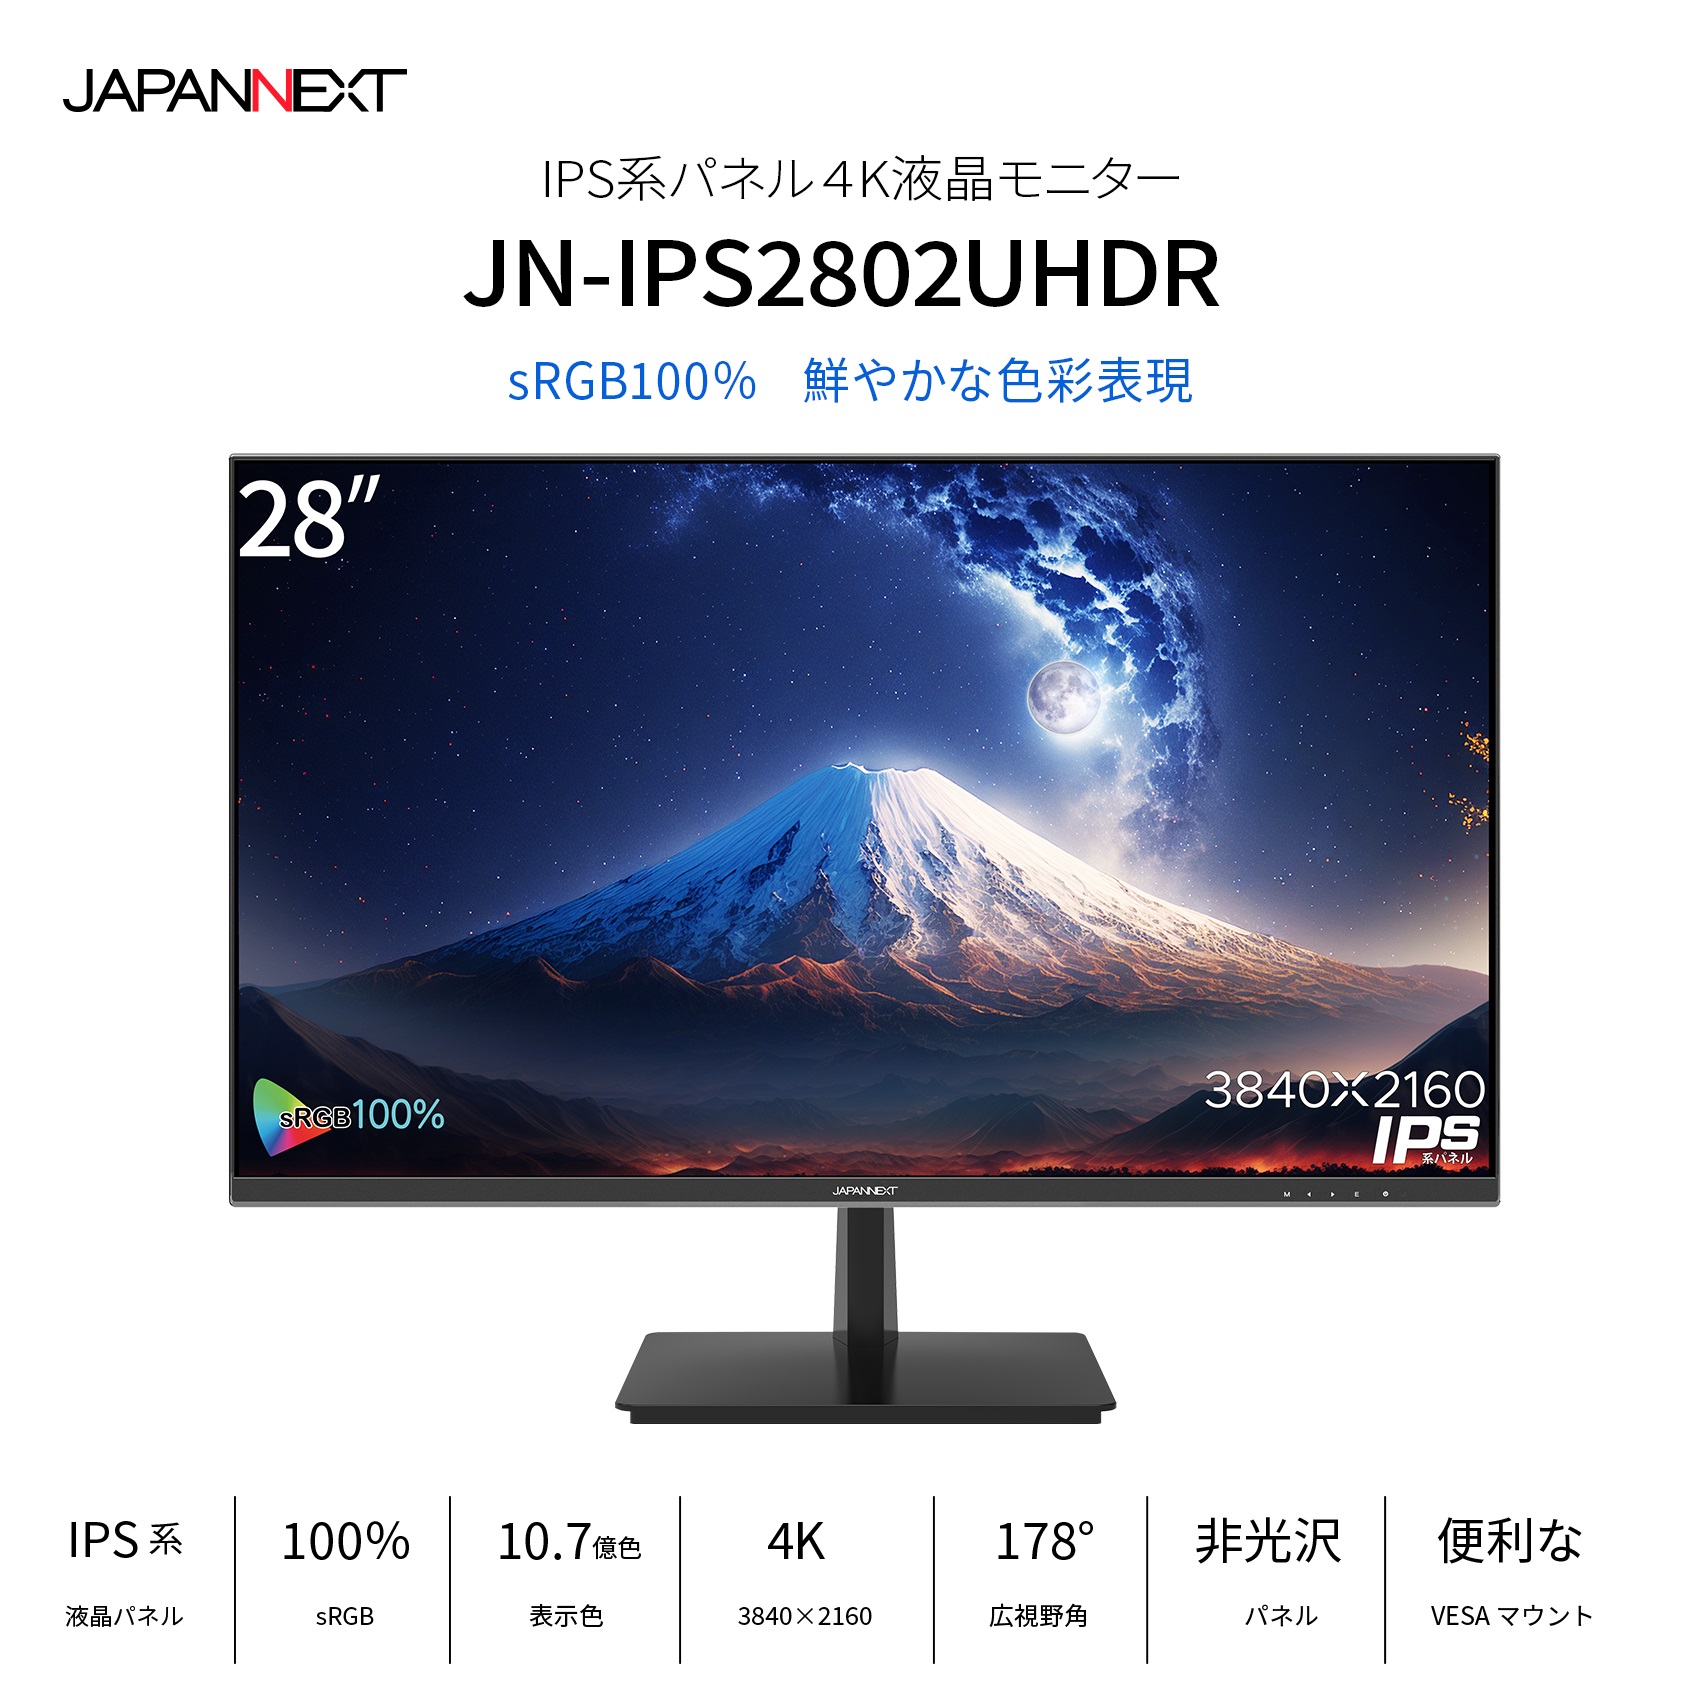 JAPANNEXT 28インチ IPSパネル 4K(3840x2160)液晶モニター HDR対応 JN 